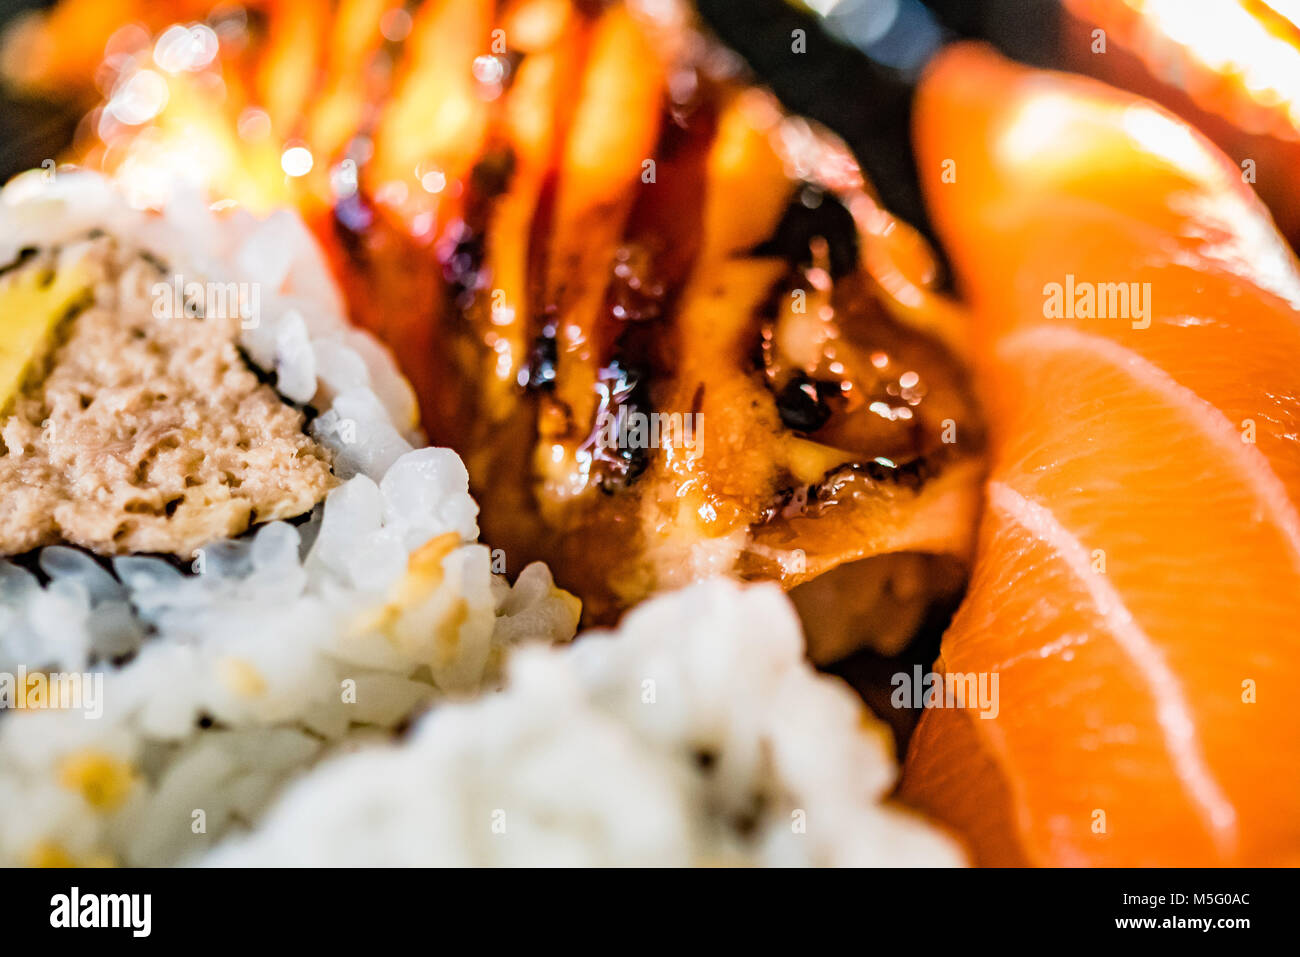 Gemischte frische Fisch sushi Platte, Makro food Fotografie, selektiven Fokus. Japanisches Essen, Lachs, Makrele, Thunfisch Sushi, Reis, Rosa, Weiß, Nahaufnahme. Stockfoto